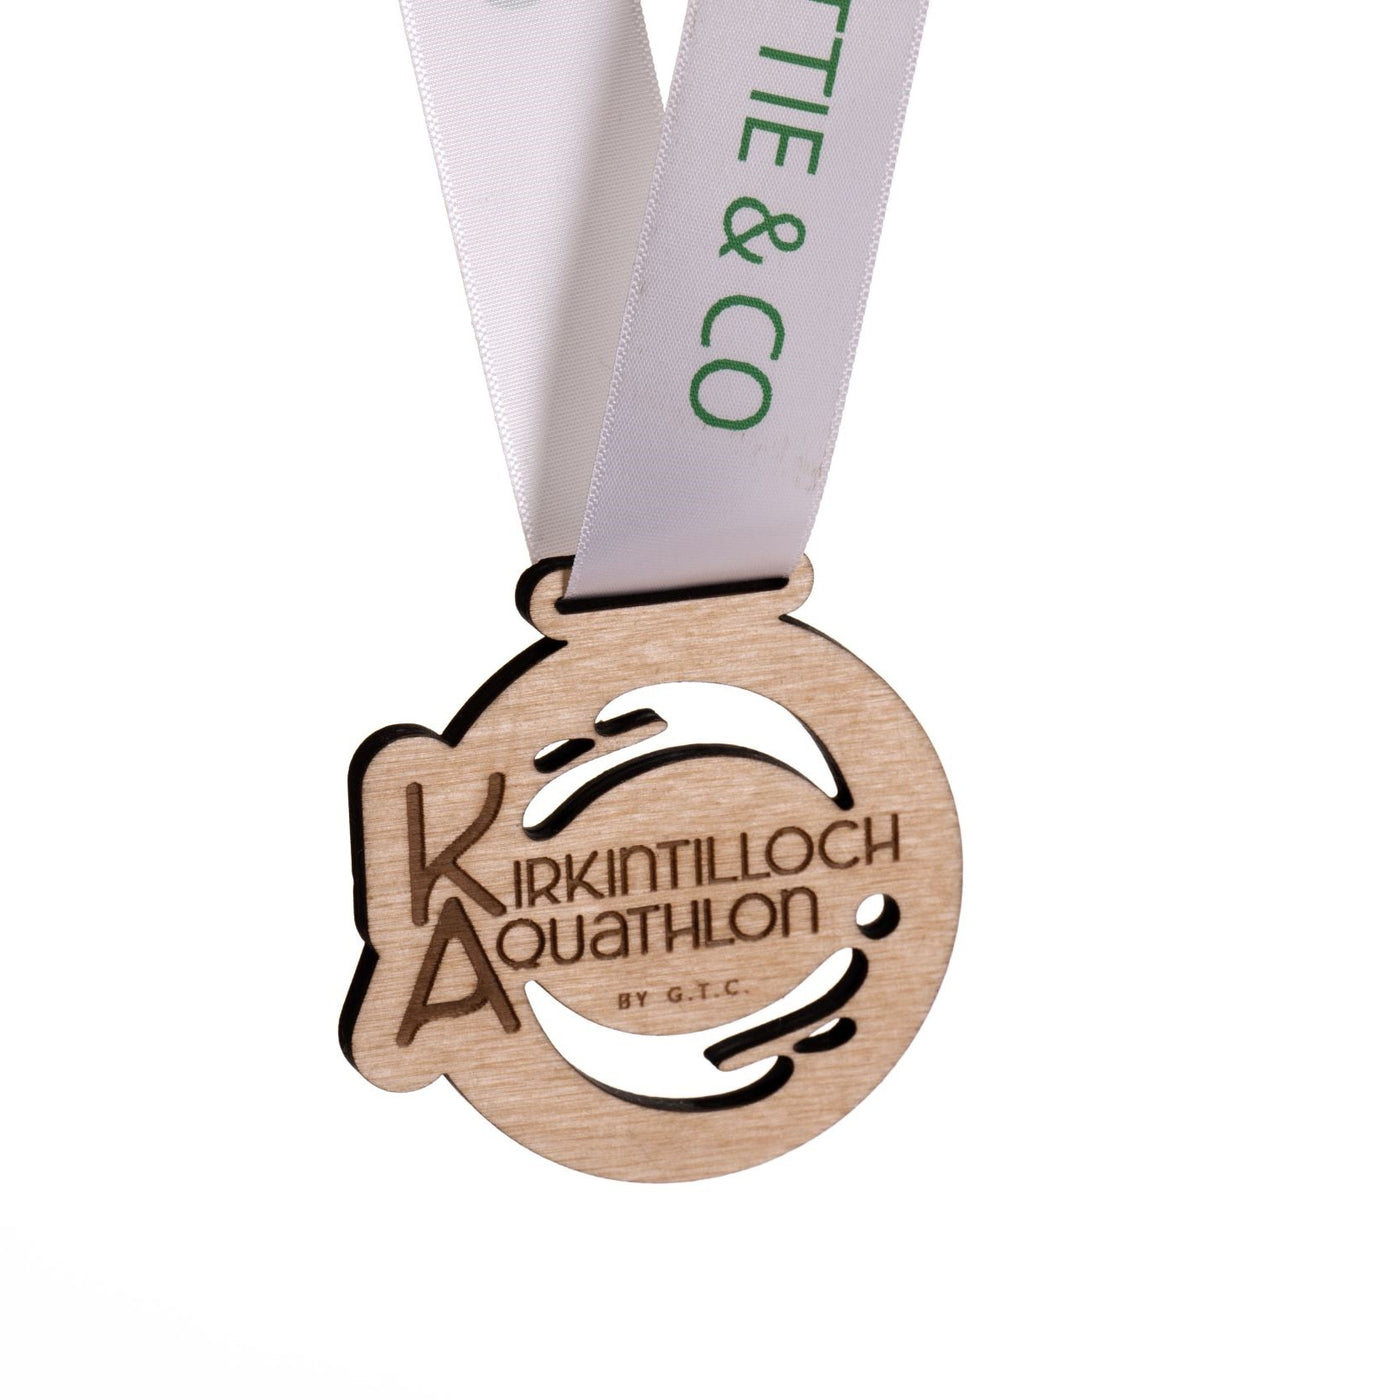 Kirkintilloch Aquathlon Medal